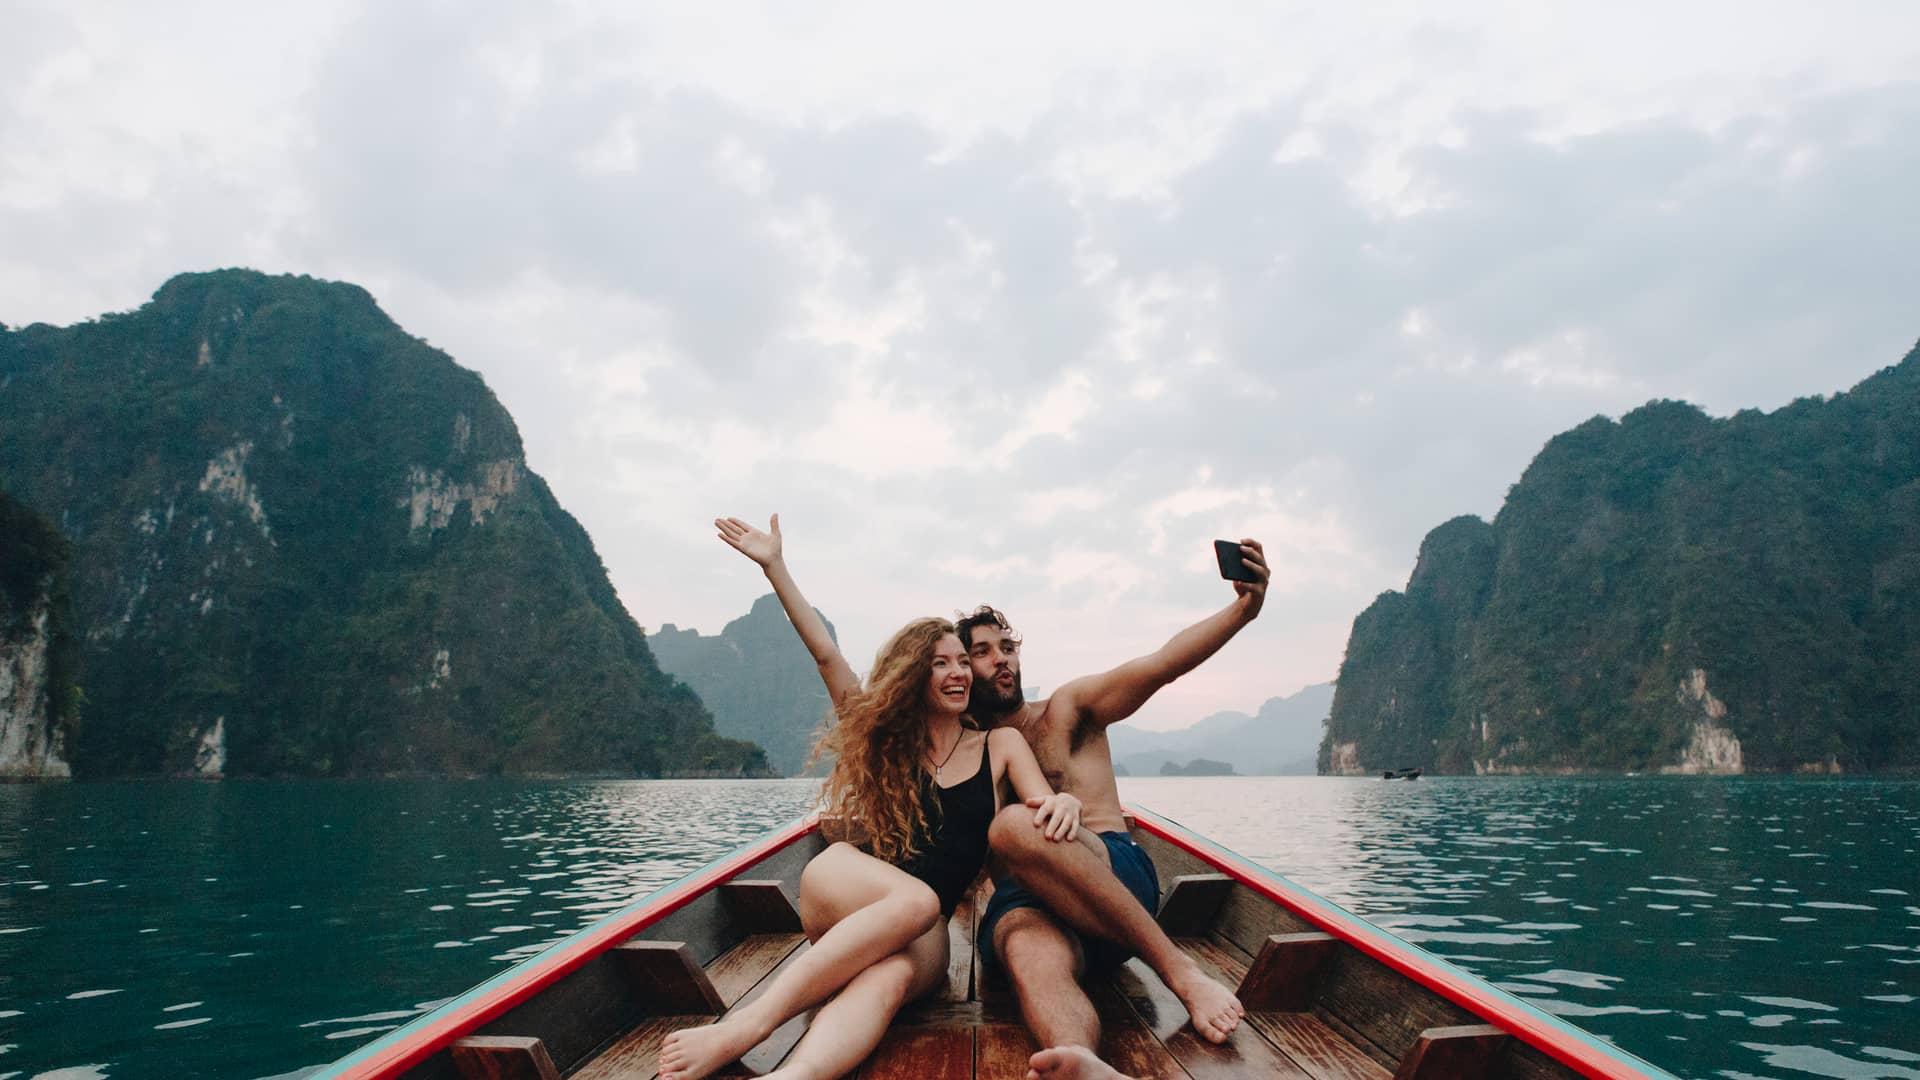 Pareja tomando selfie en un barco de cola larga representa gigas infinitos de yoigo